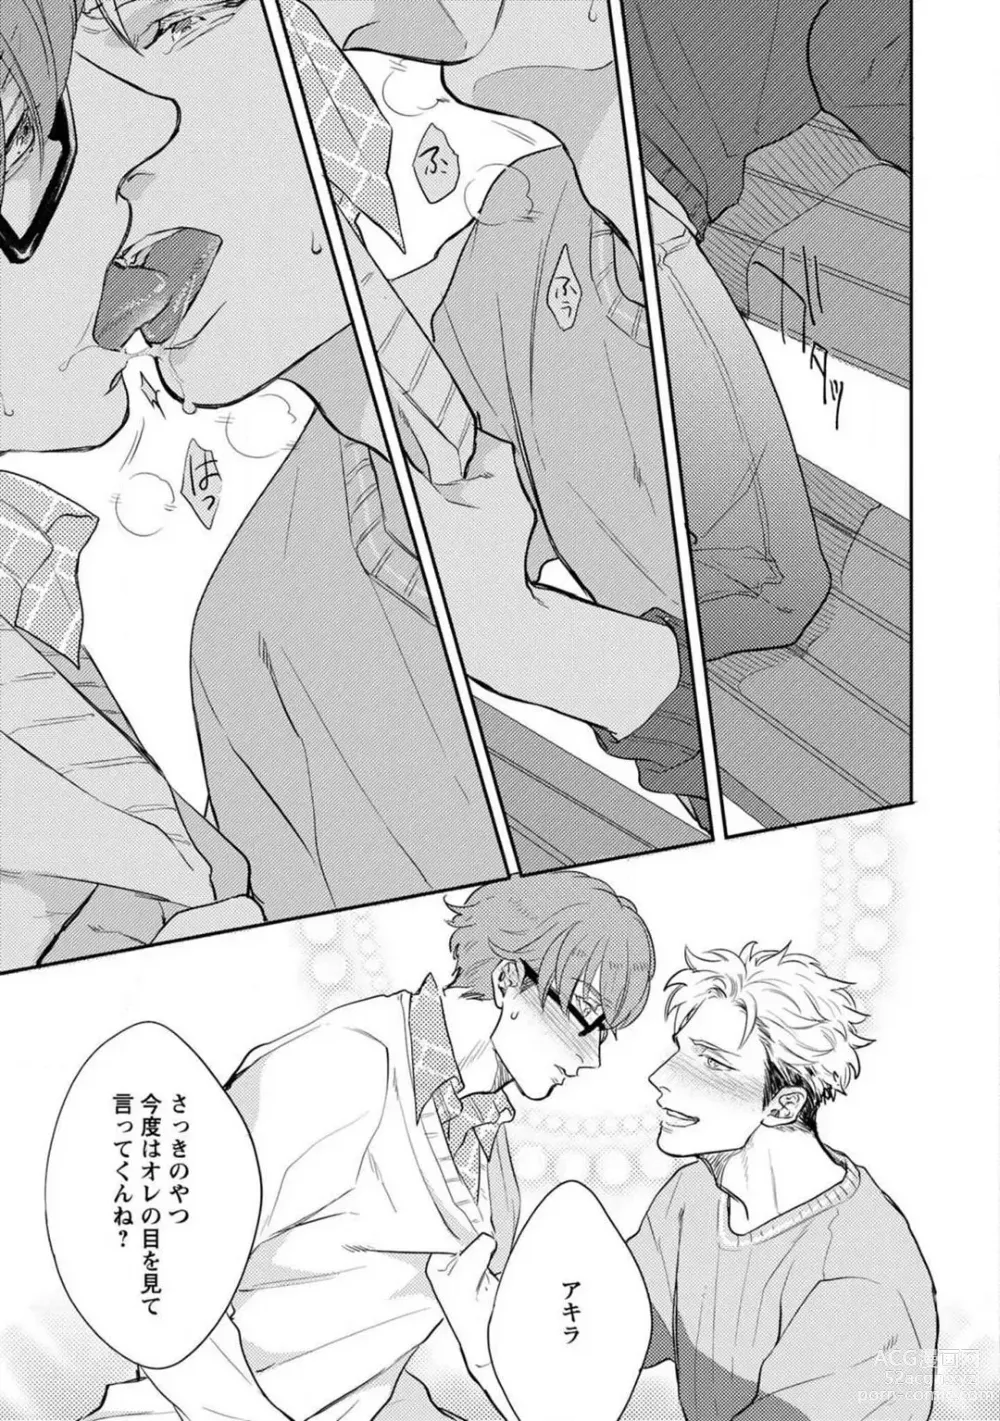 Page 46 of manga Kimi no Shiranai xx